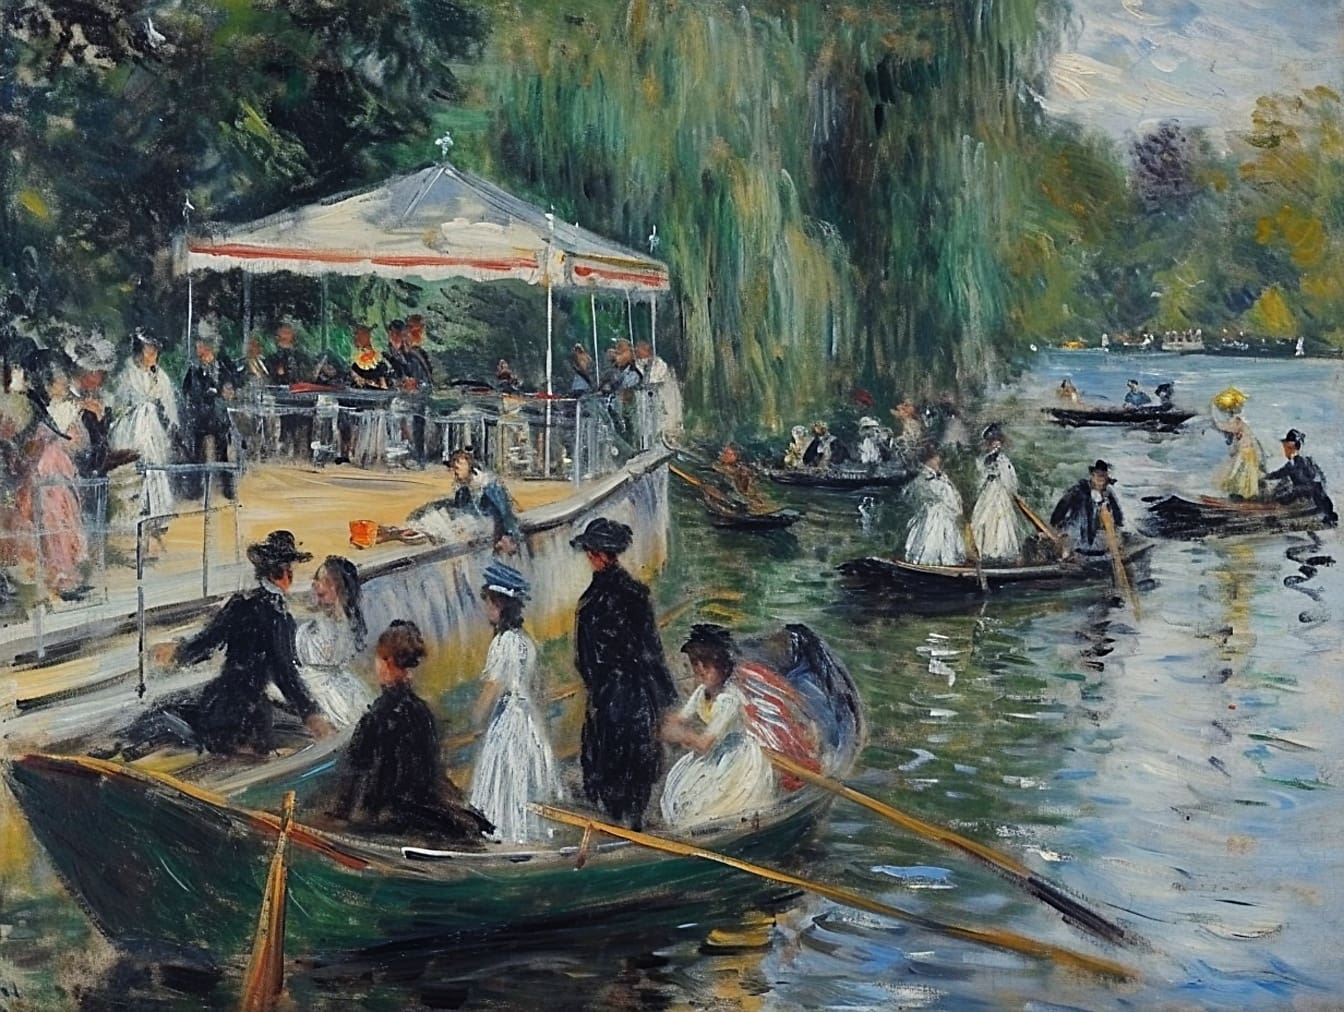 Картина олійними фарбами людей у човнах на річці, що зображує спосіб життя заможних людей 19 століття